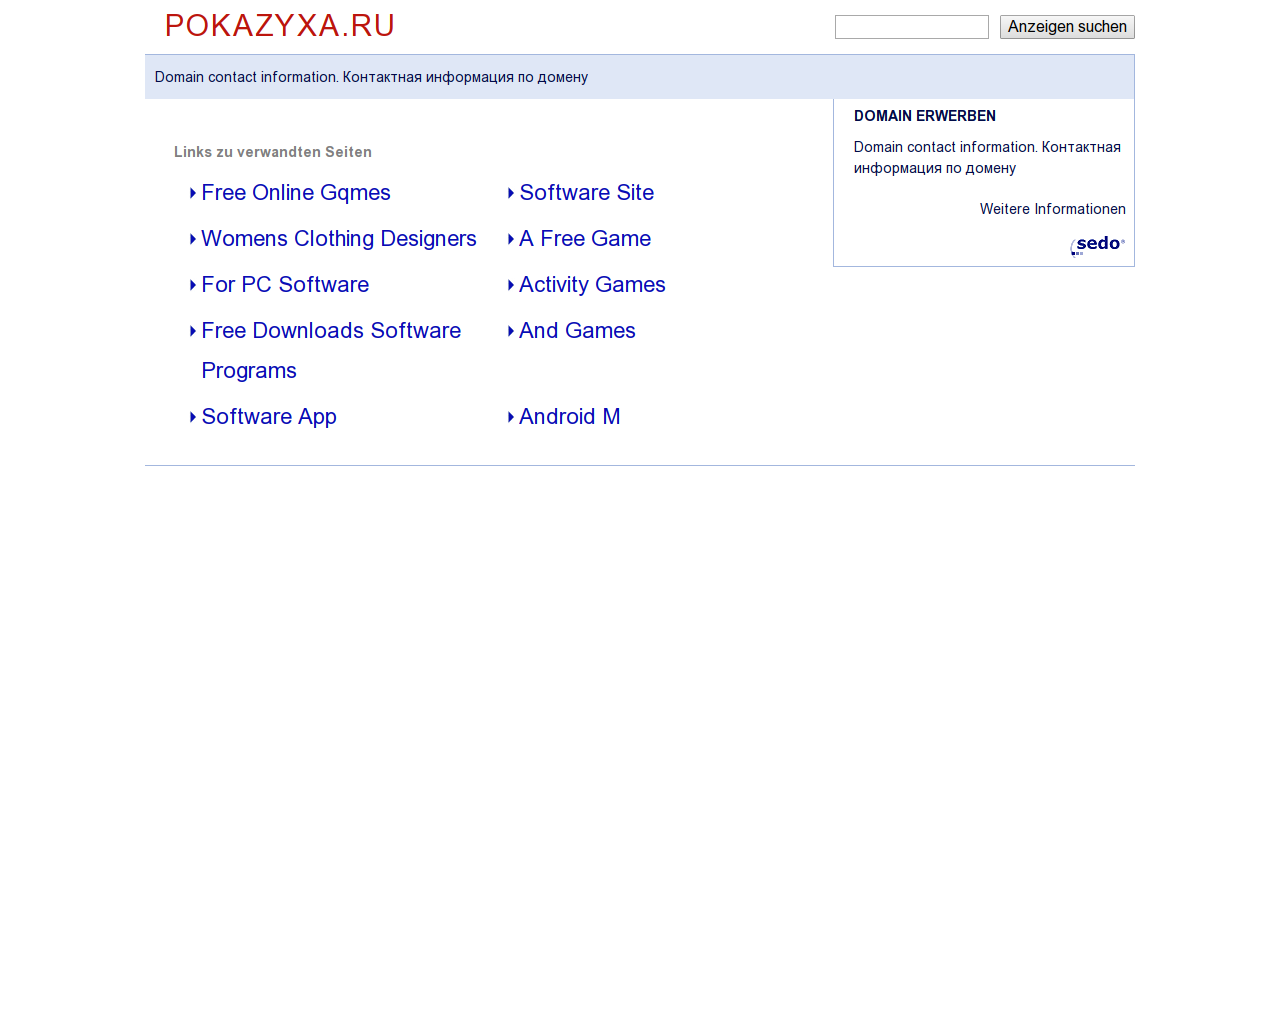 Изображение сайта pokazyxa.ru в разрешении 1280x1024